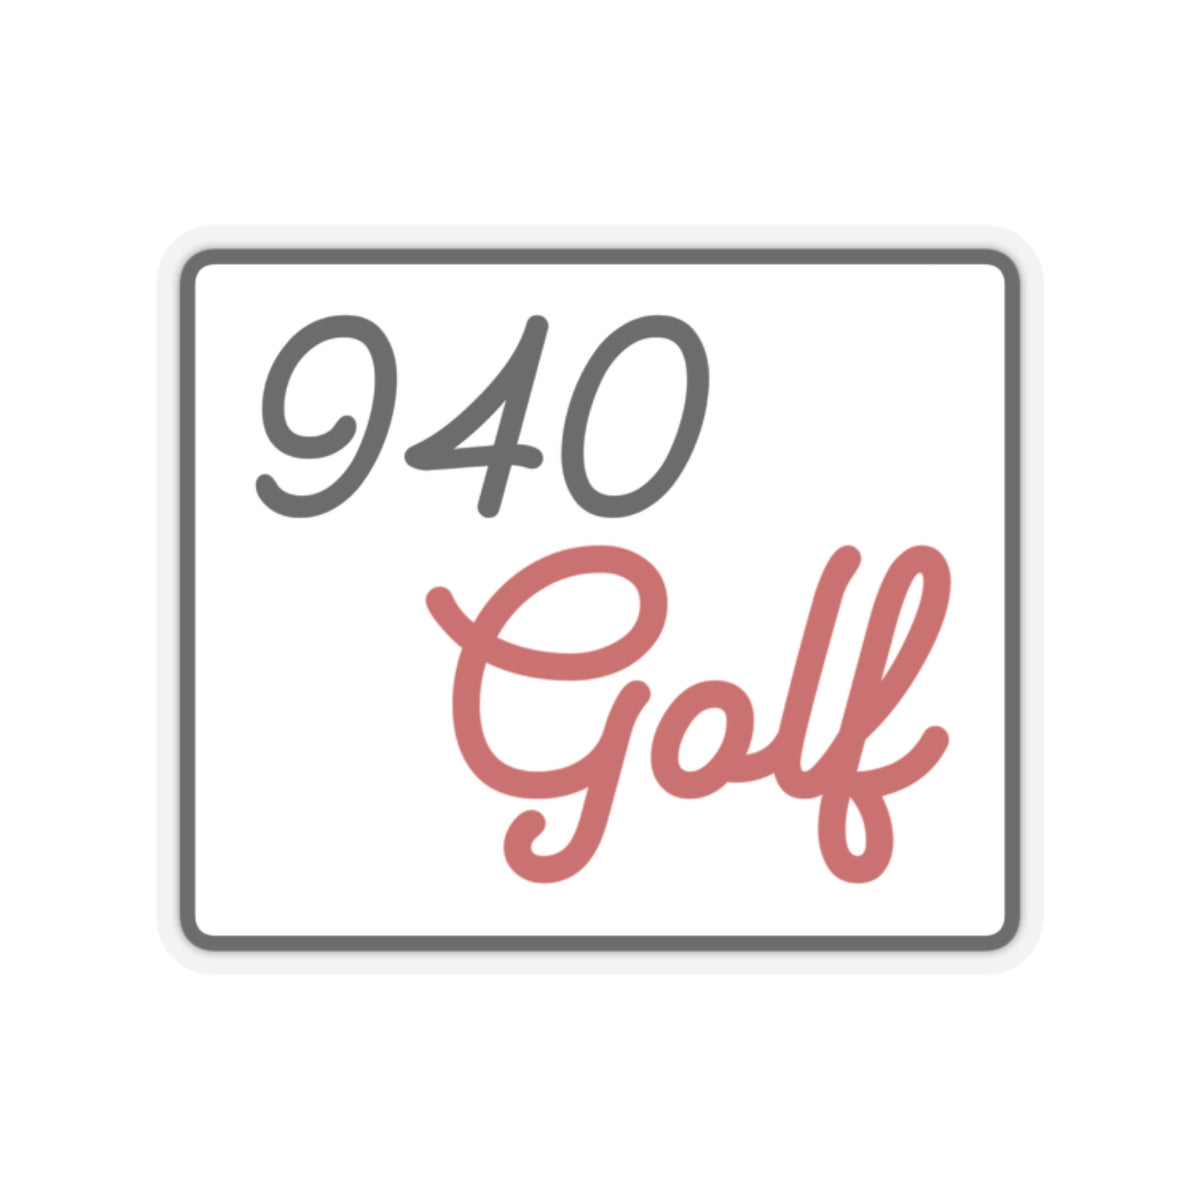 940 Golf Kiss-Cut Stickers